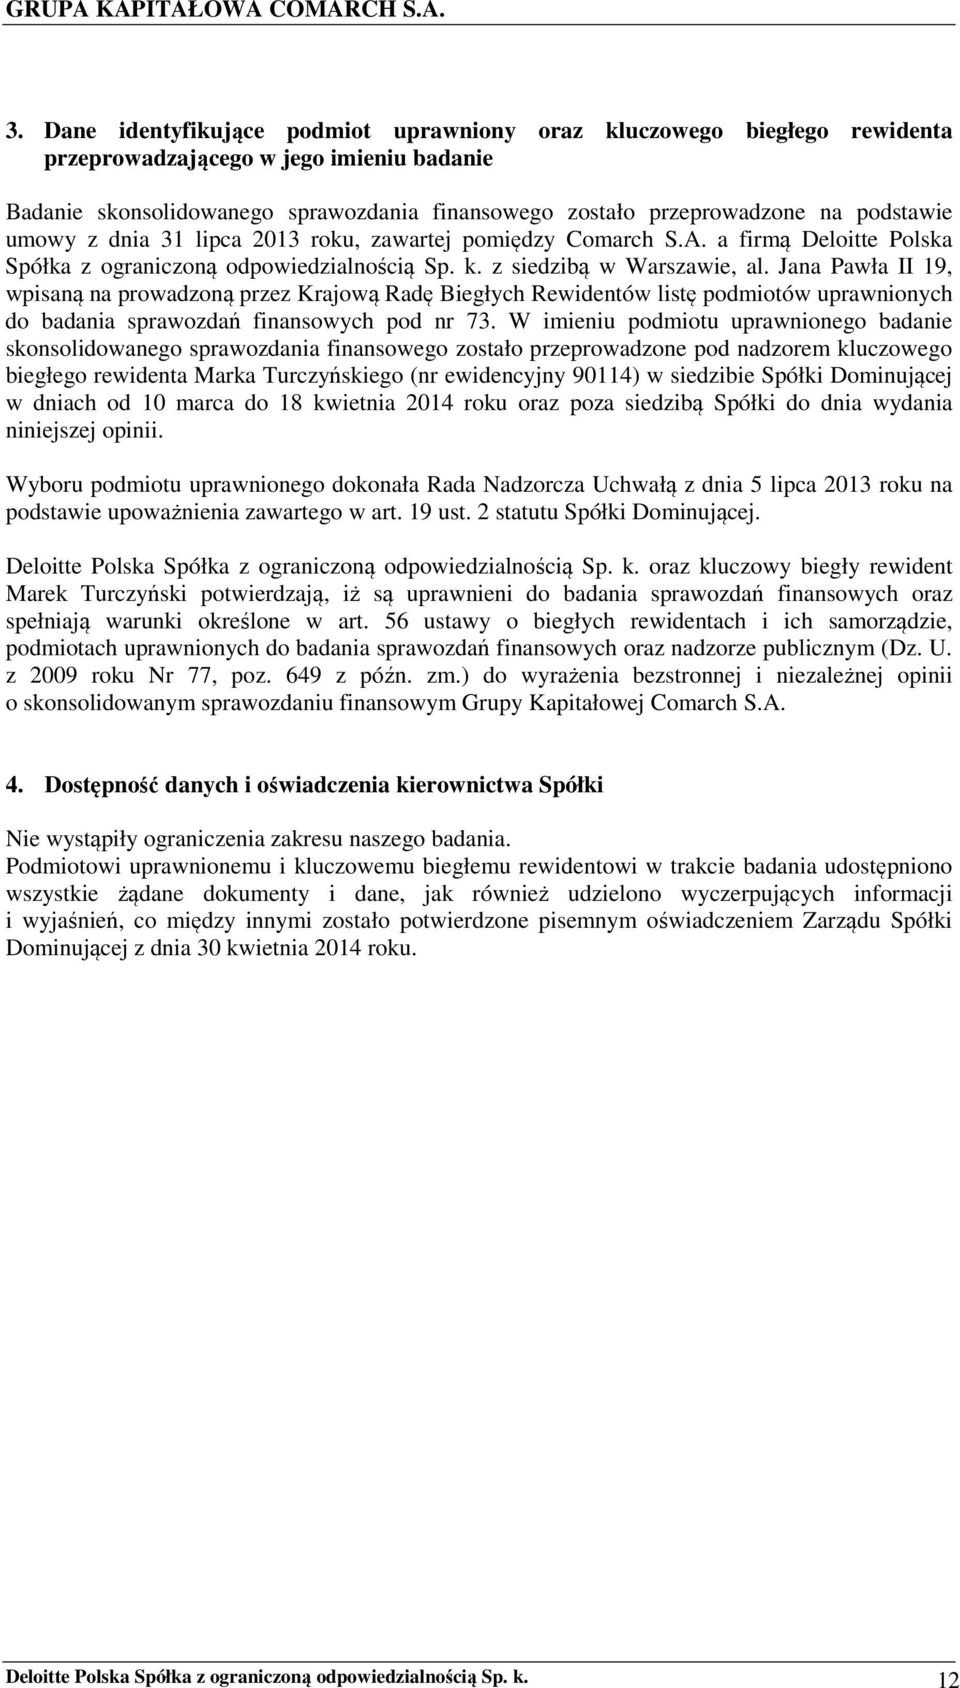 podstawie umowy z dnia 31 lipca 2013 roku, zawartej pomiędzy Comarch S.A. a firmą Deloitte Polska Spółka z ograniczoną odpowiedzialnością Sp. k. z siedzibą w Warszawie, al.